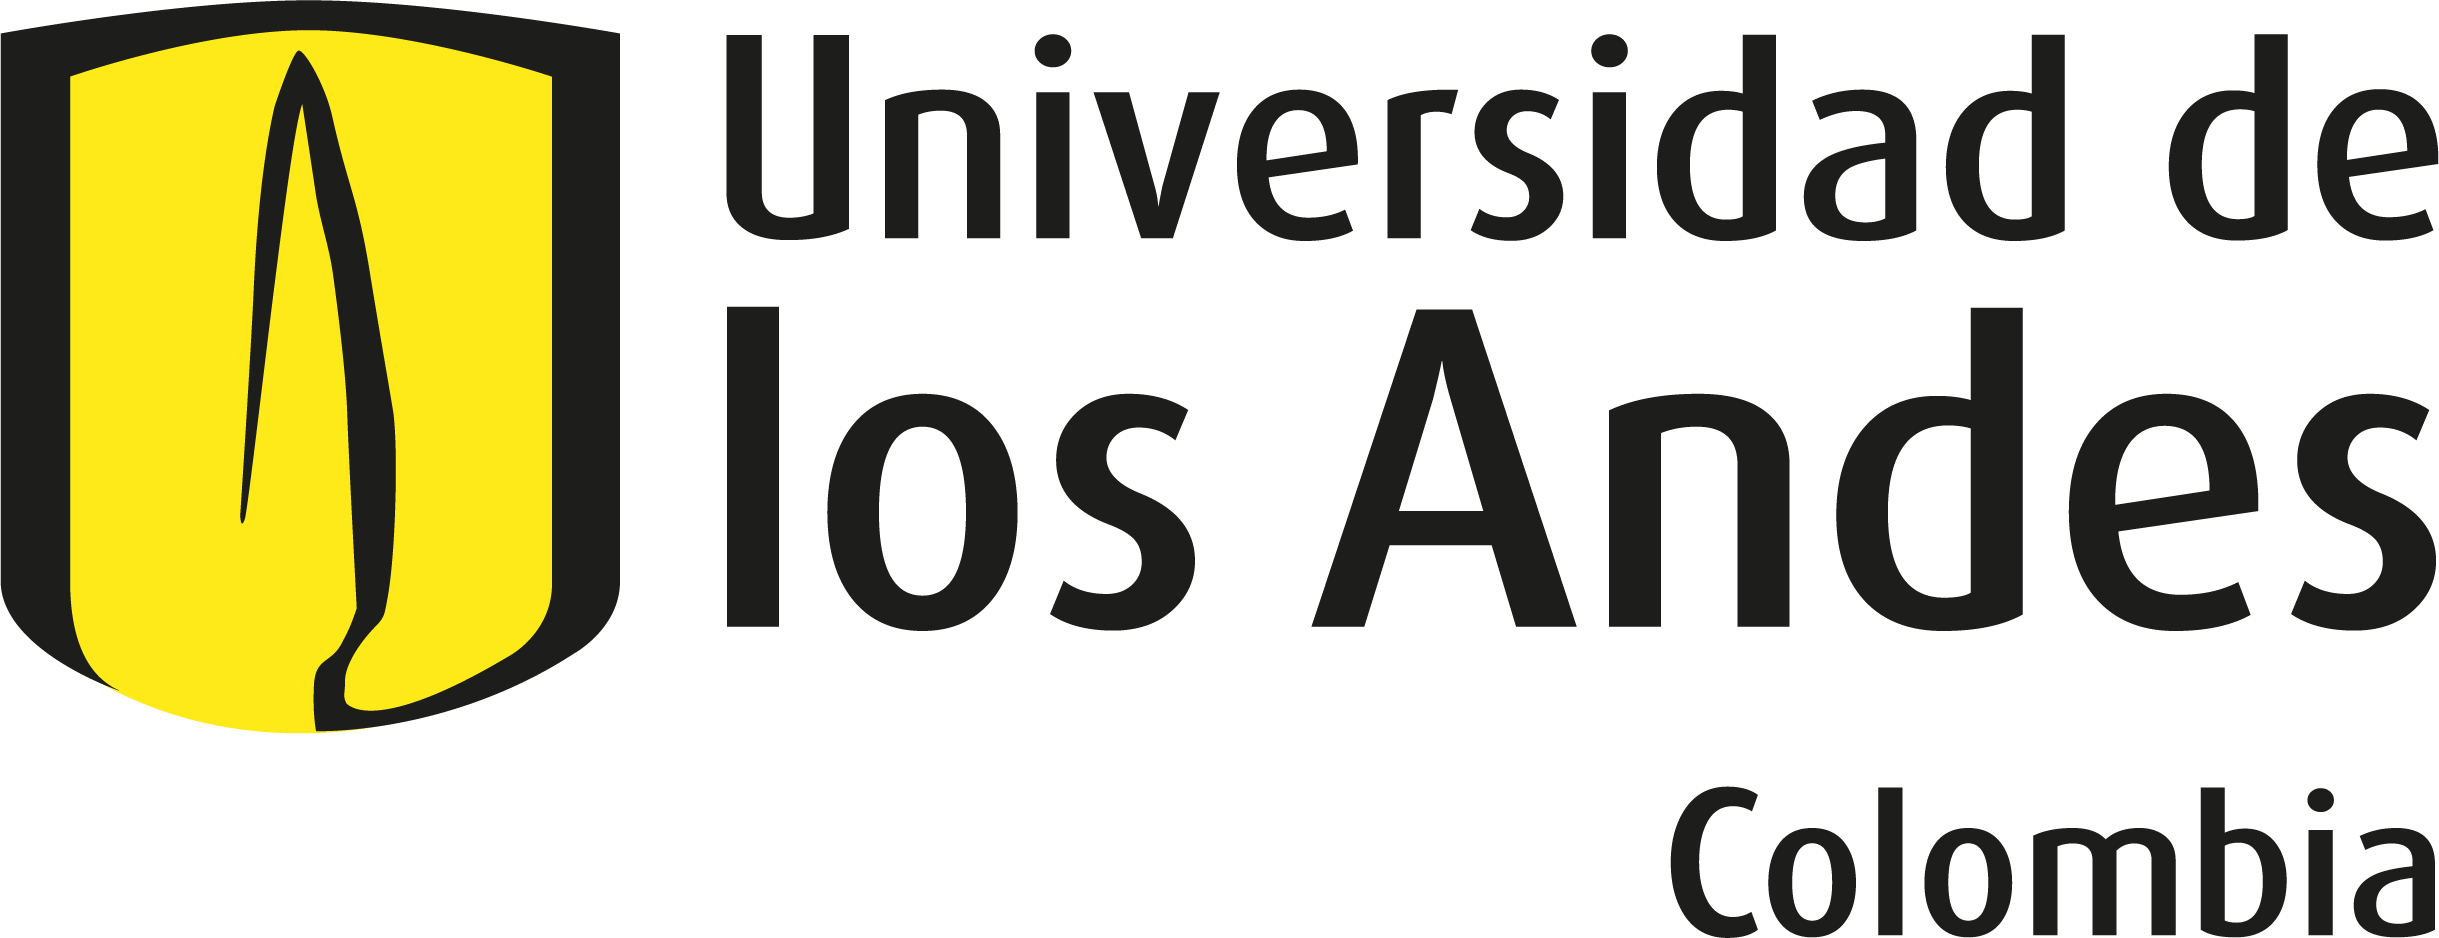 Logo Universidad de los Andes Colombia